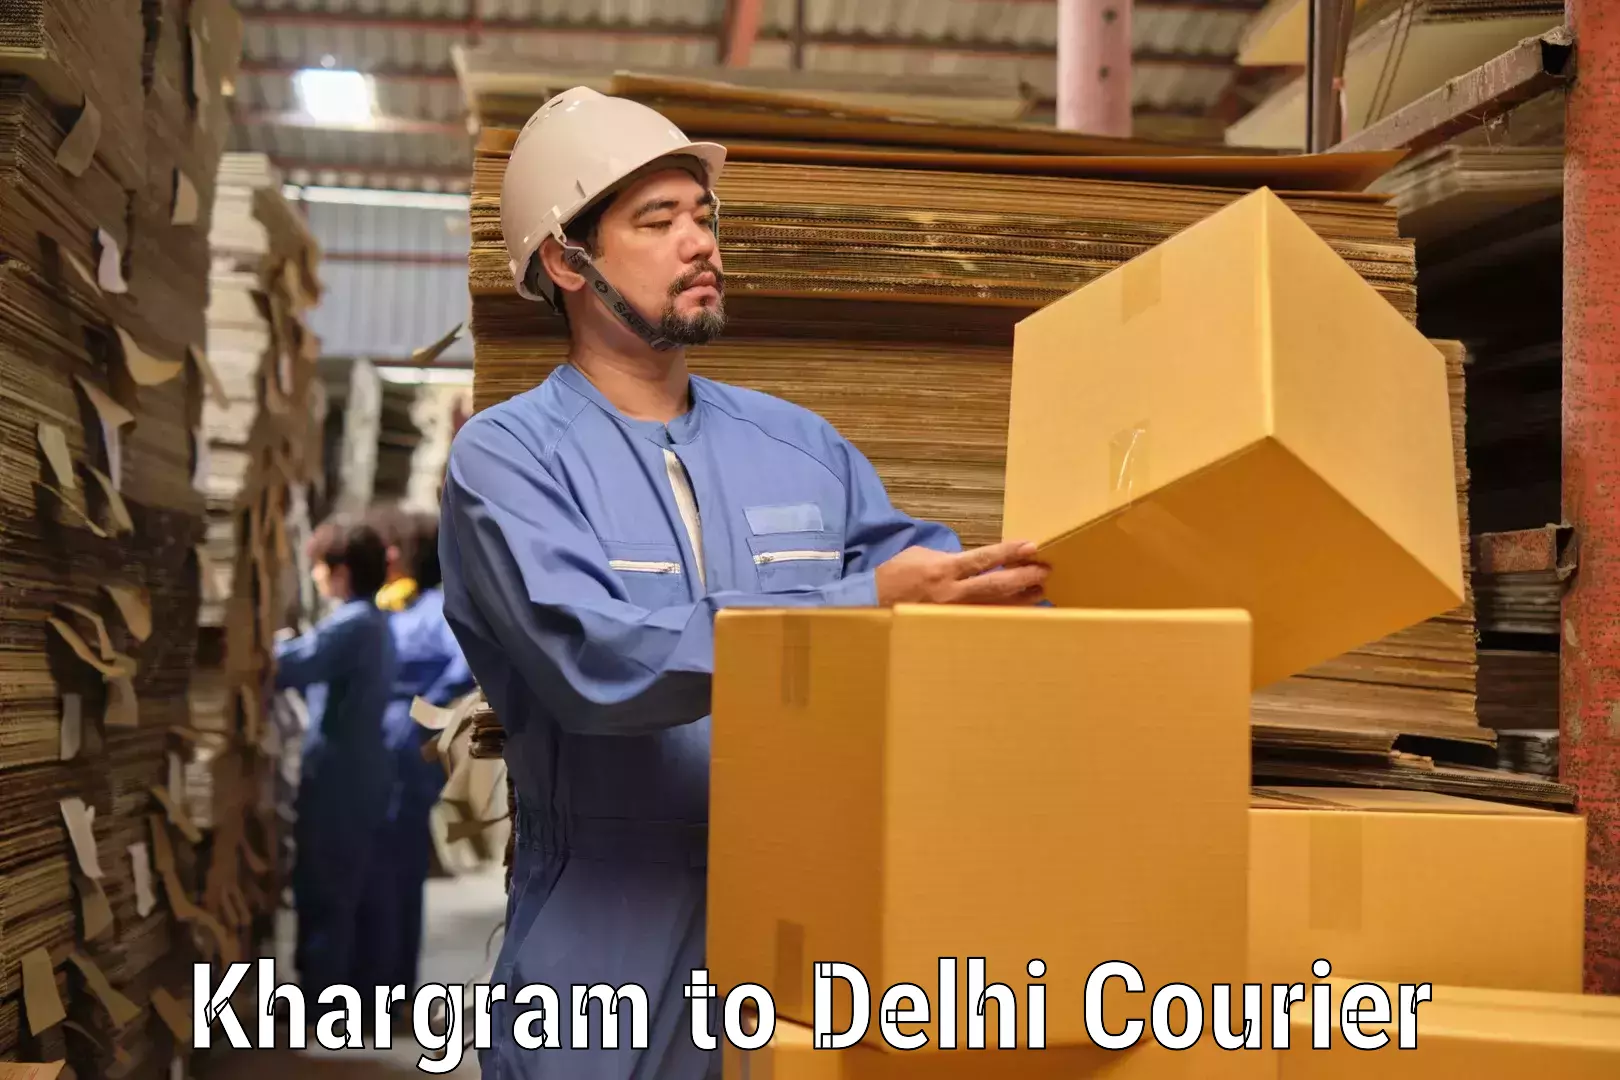 Customer-focused courier Khargram to Kalkaji